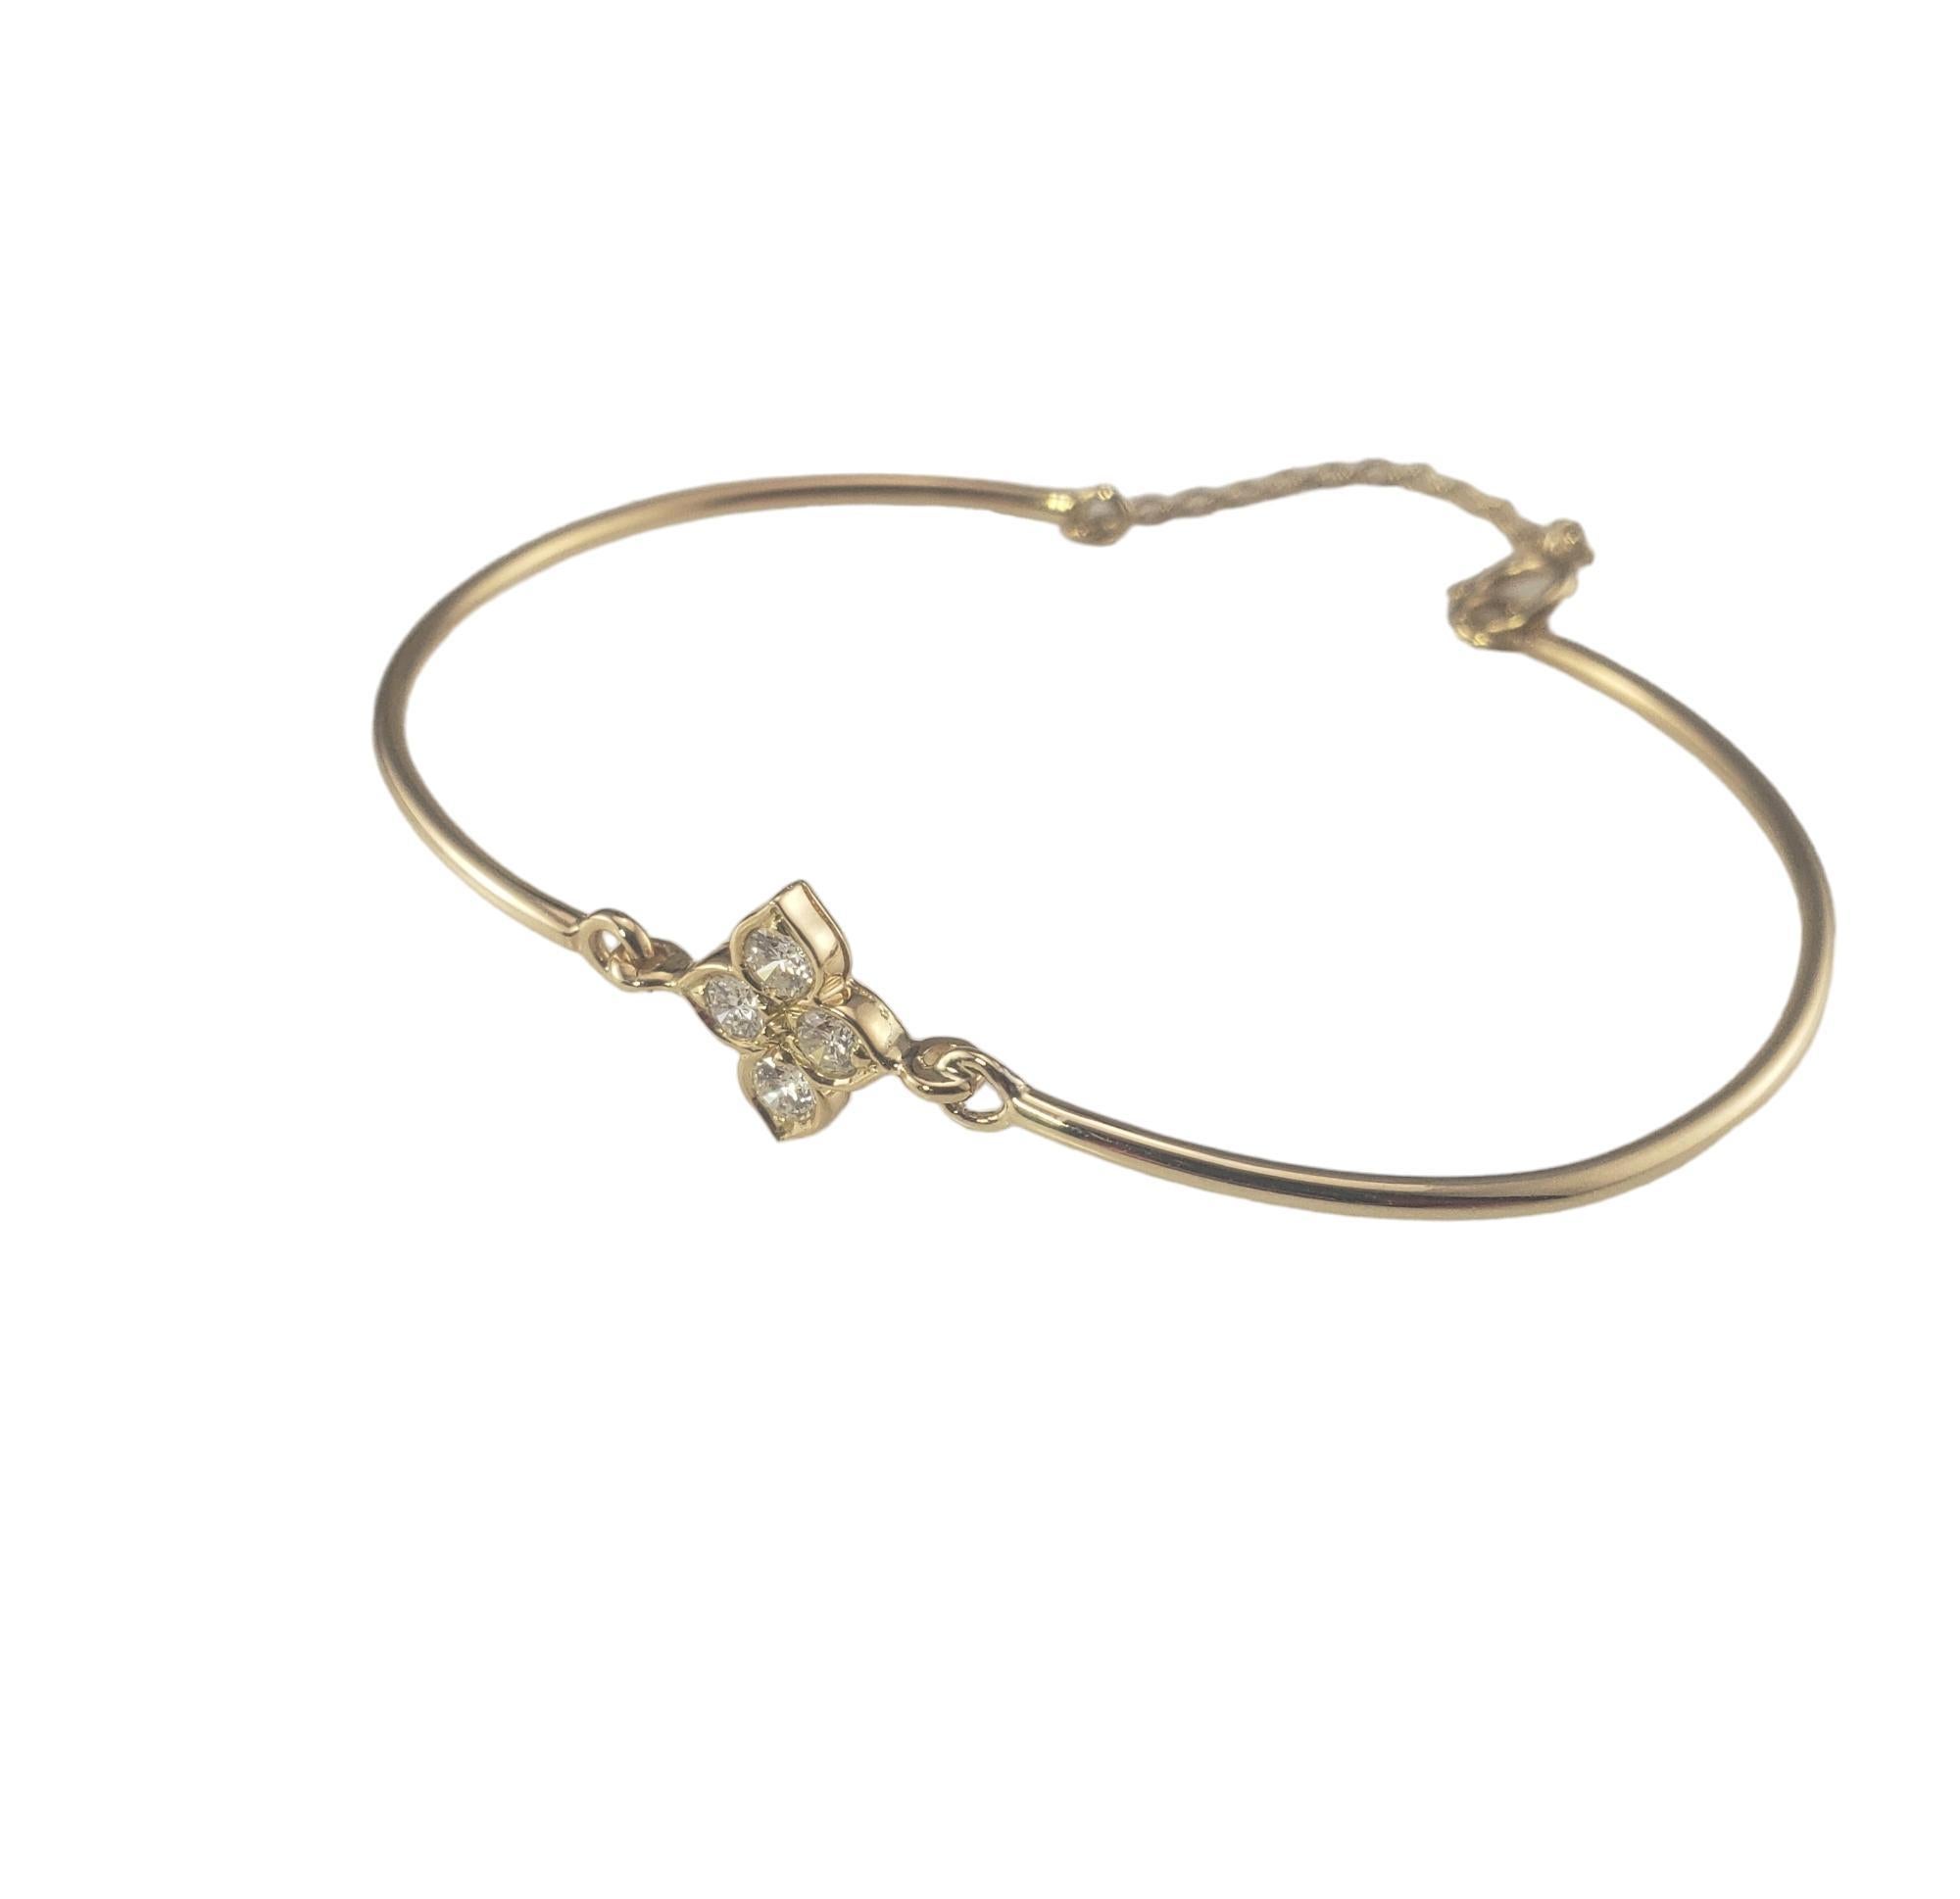 Bracelet quadrilobe en or jaune 18K et diamants de Cartier

Le bracelet Quatrefoil de Cartier est orné de quatre diamants ronds de taille brillant sertis dans de l'or jaune 18 carats magnifiquement détaillé. Fermeture à ressort en chaîne*  

Largeur